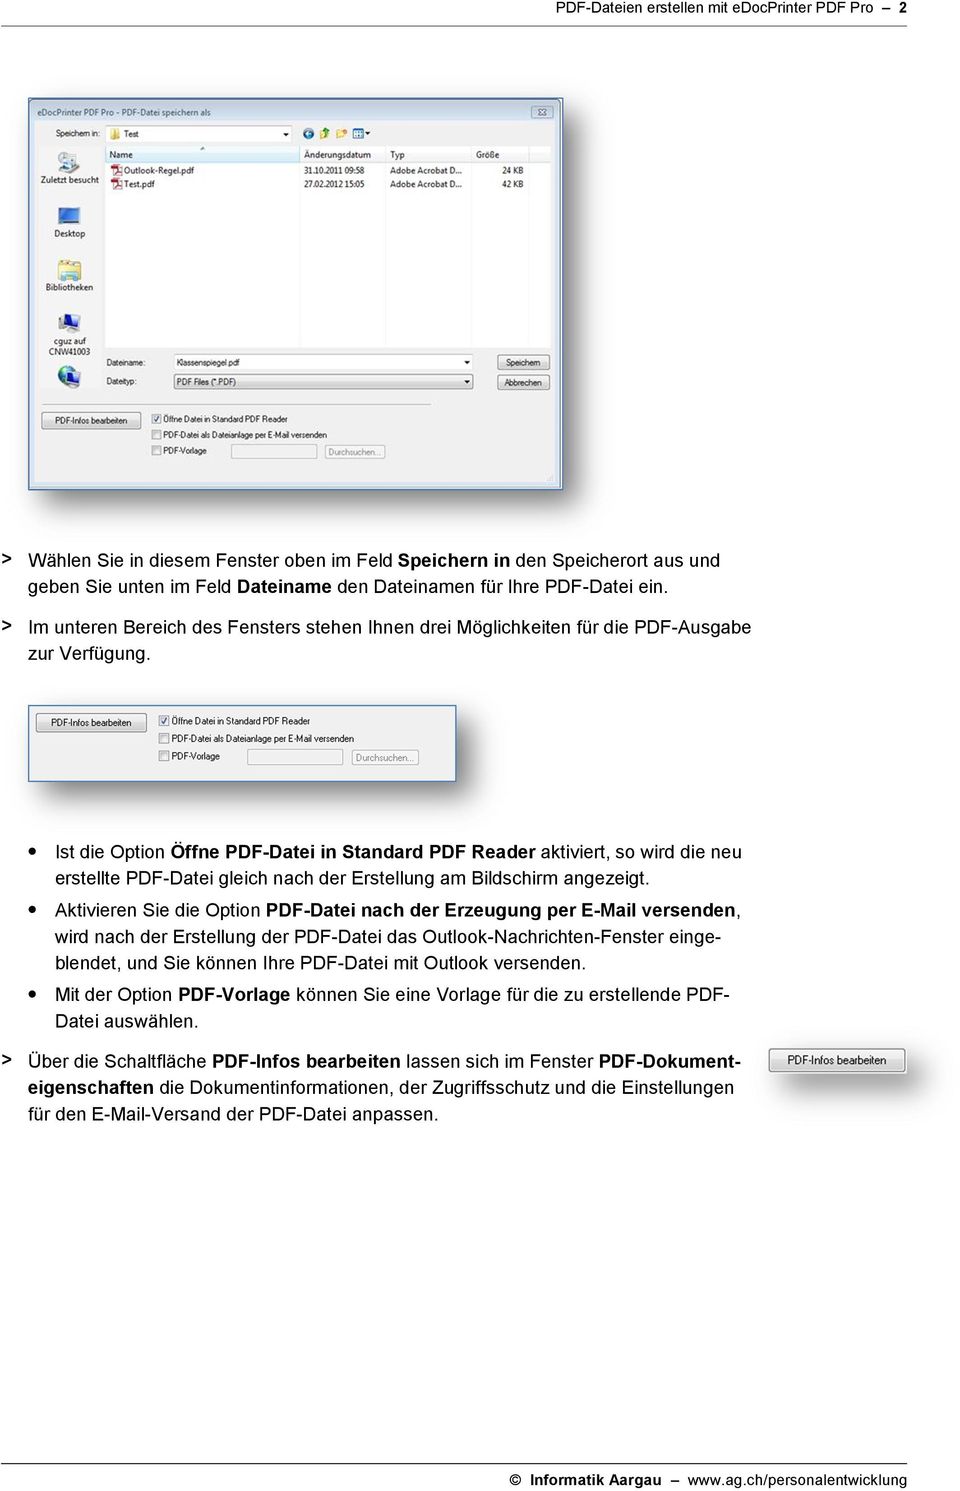 Ist die Option Öffne PDF-Datei in Standard PDF Reader aktiviert, so wird die neu erstellte PDF-Datei gleich nach der Erstellung am Bildschirm angezeigt.